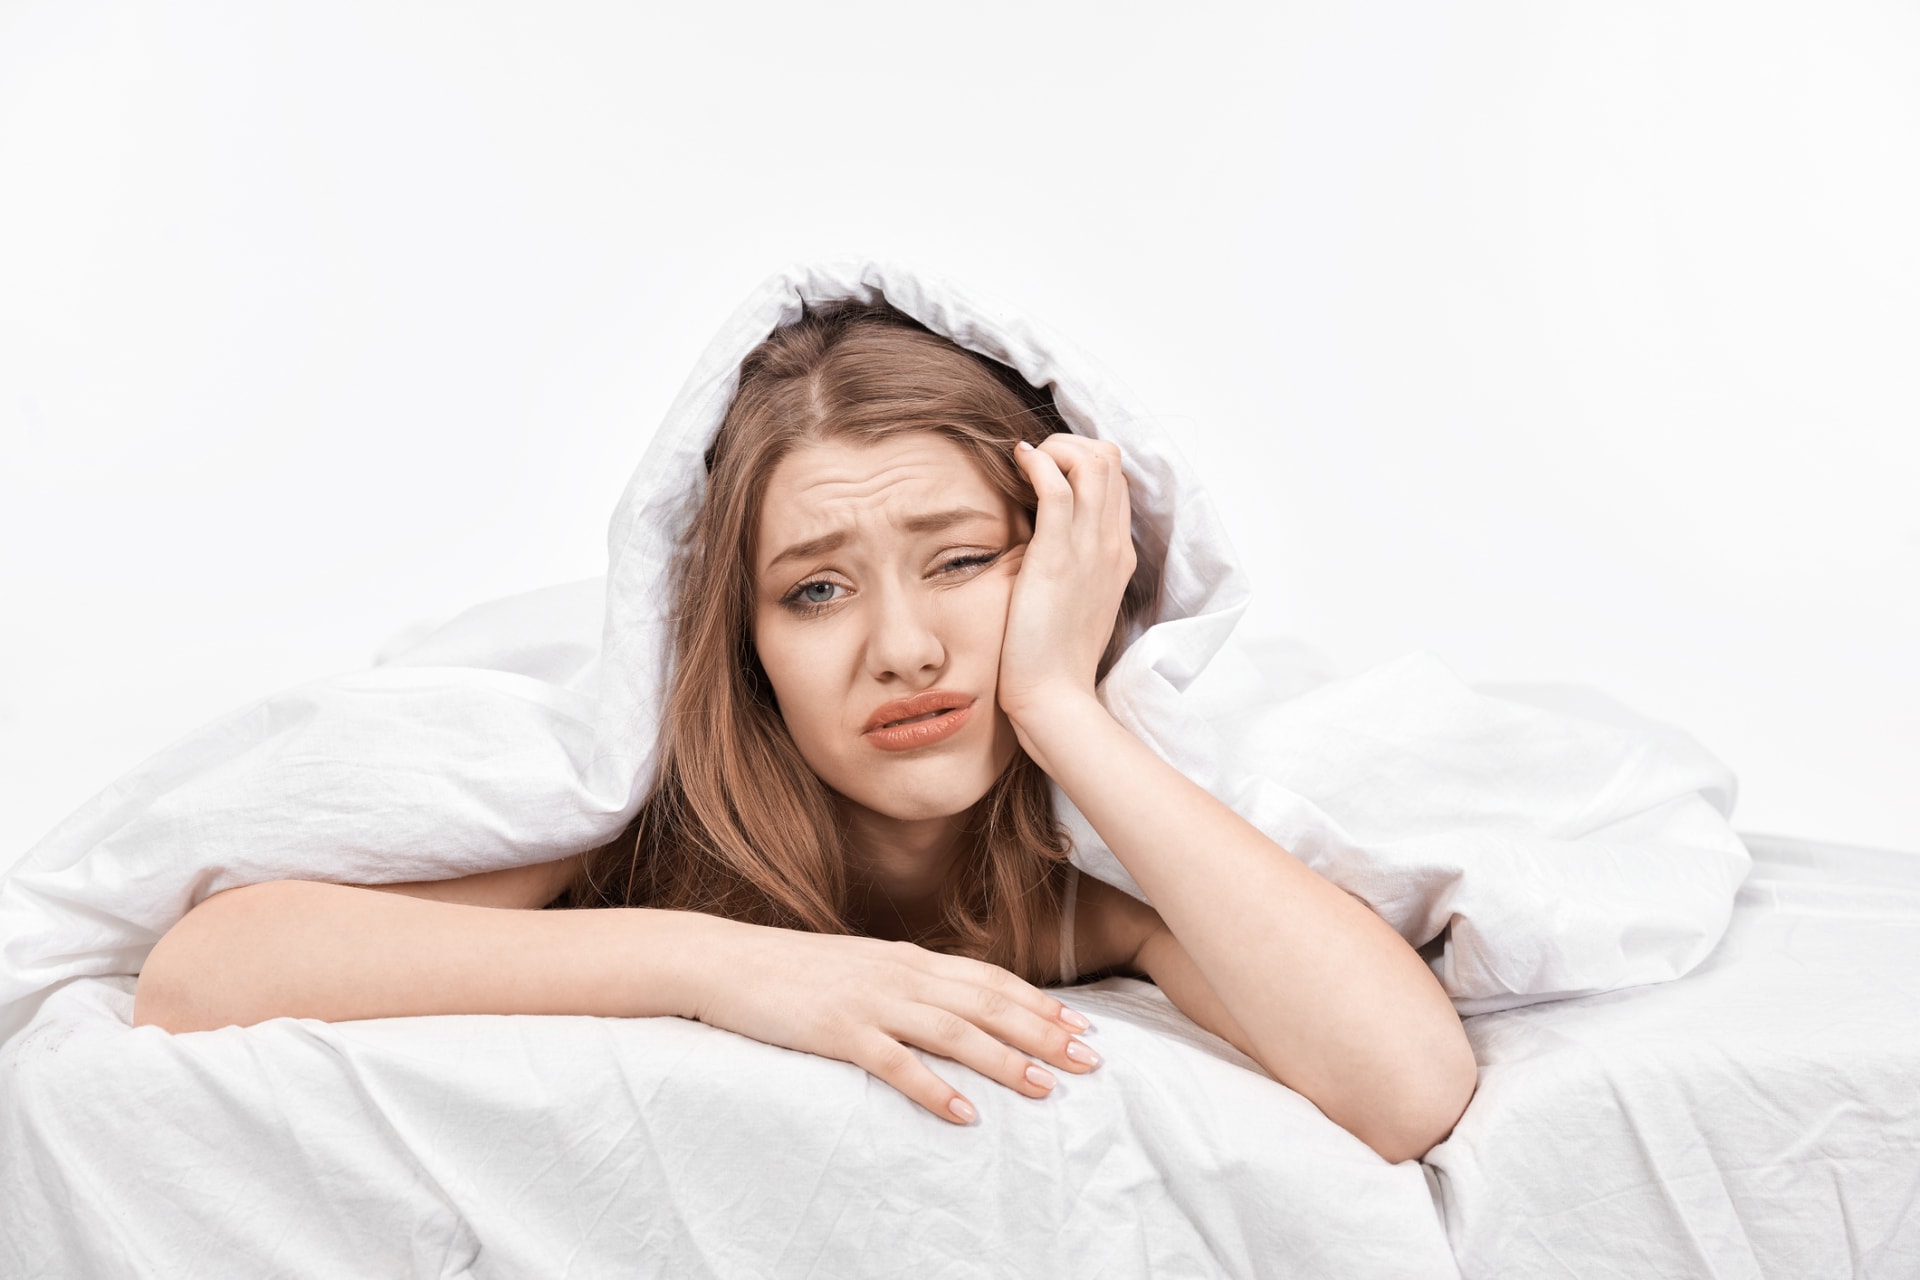 Co zhoršuje váš spánek?